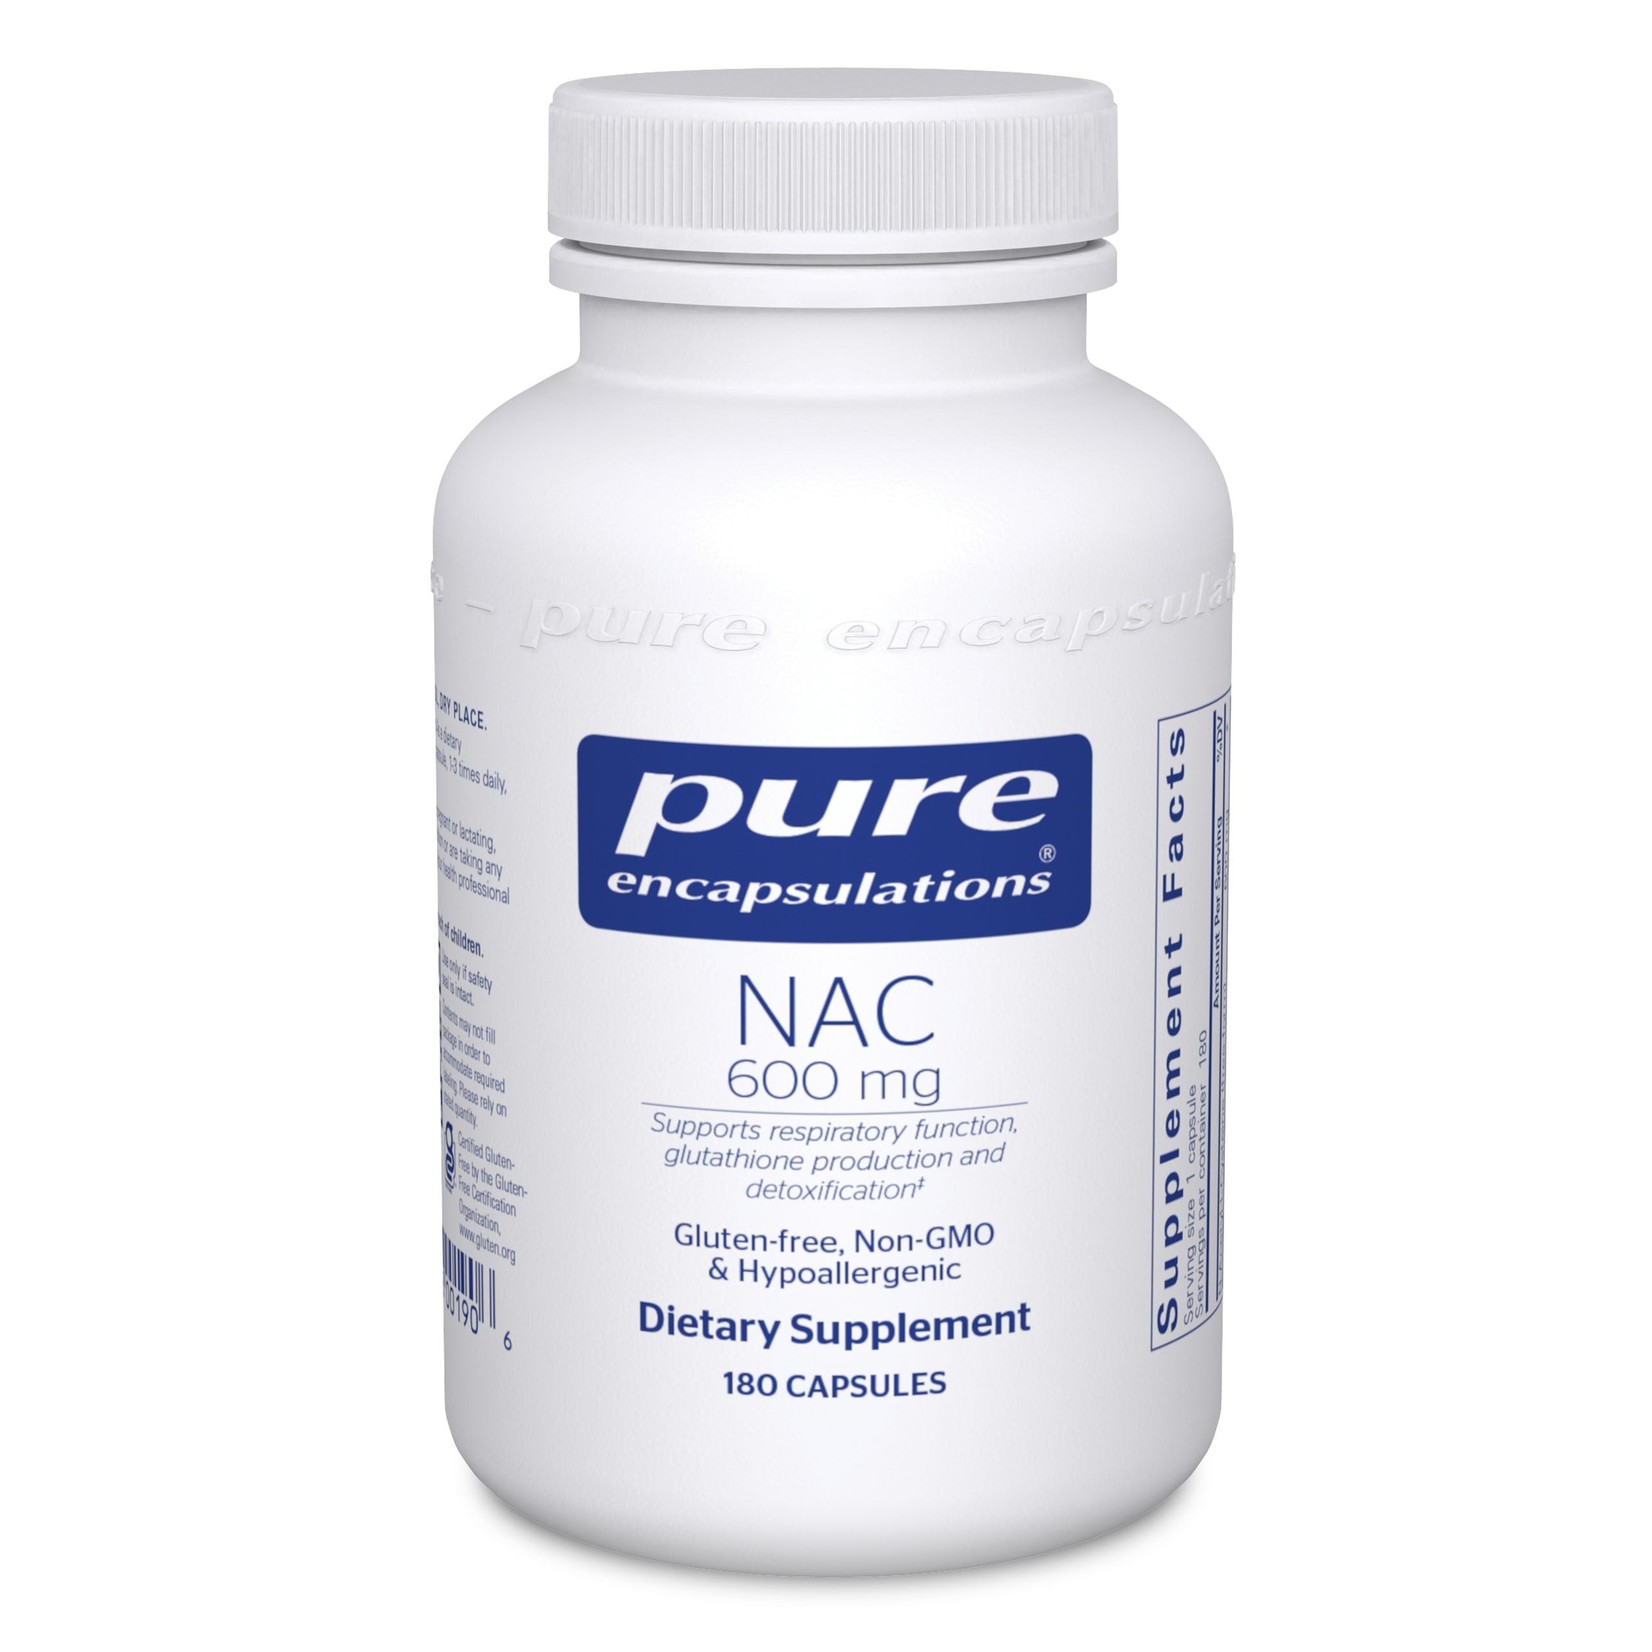 Pure Encapsulations Pure Encapsulations - Nac 600 mg - 180 Capsules